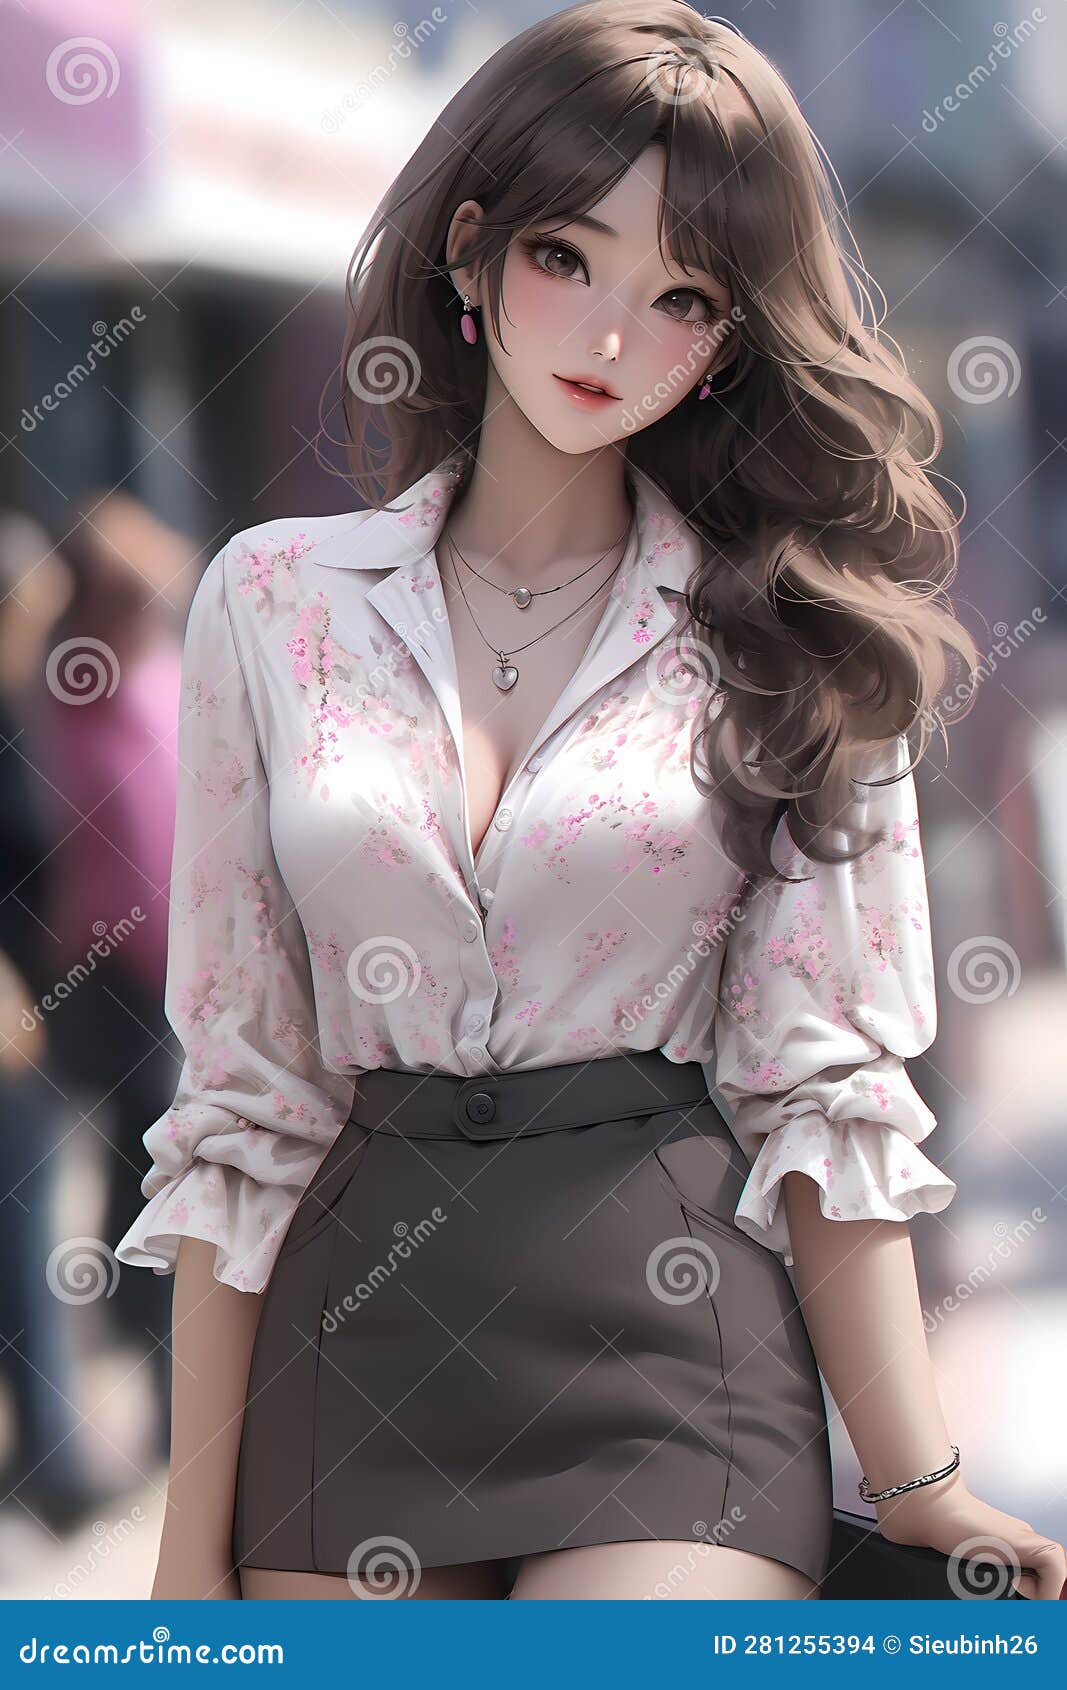 HD wallpaper: Anime, Girl, Brunette, Face, beauty, portrait, beautiful woman  | Wallpaper Flare